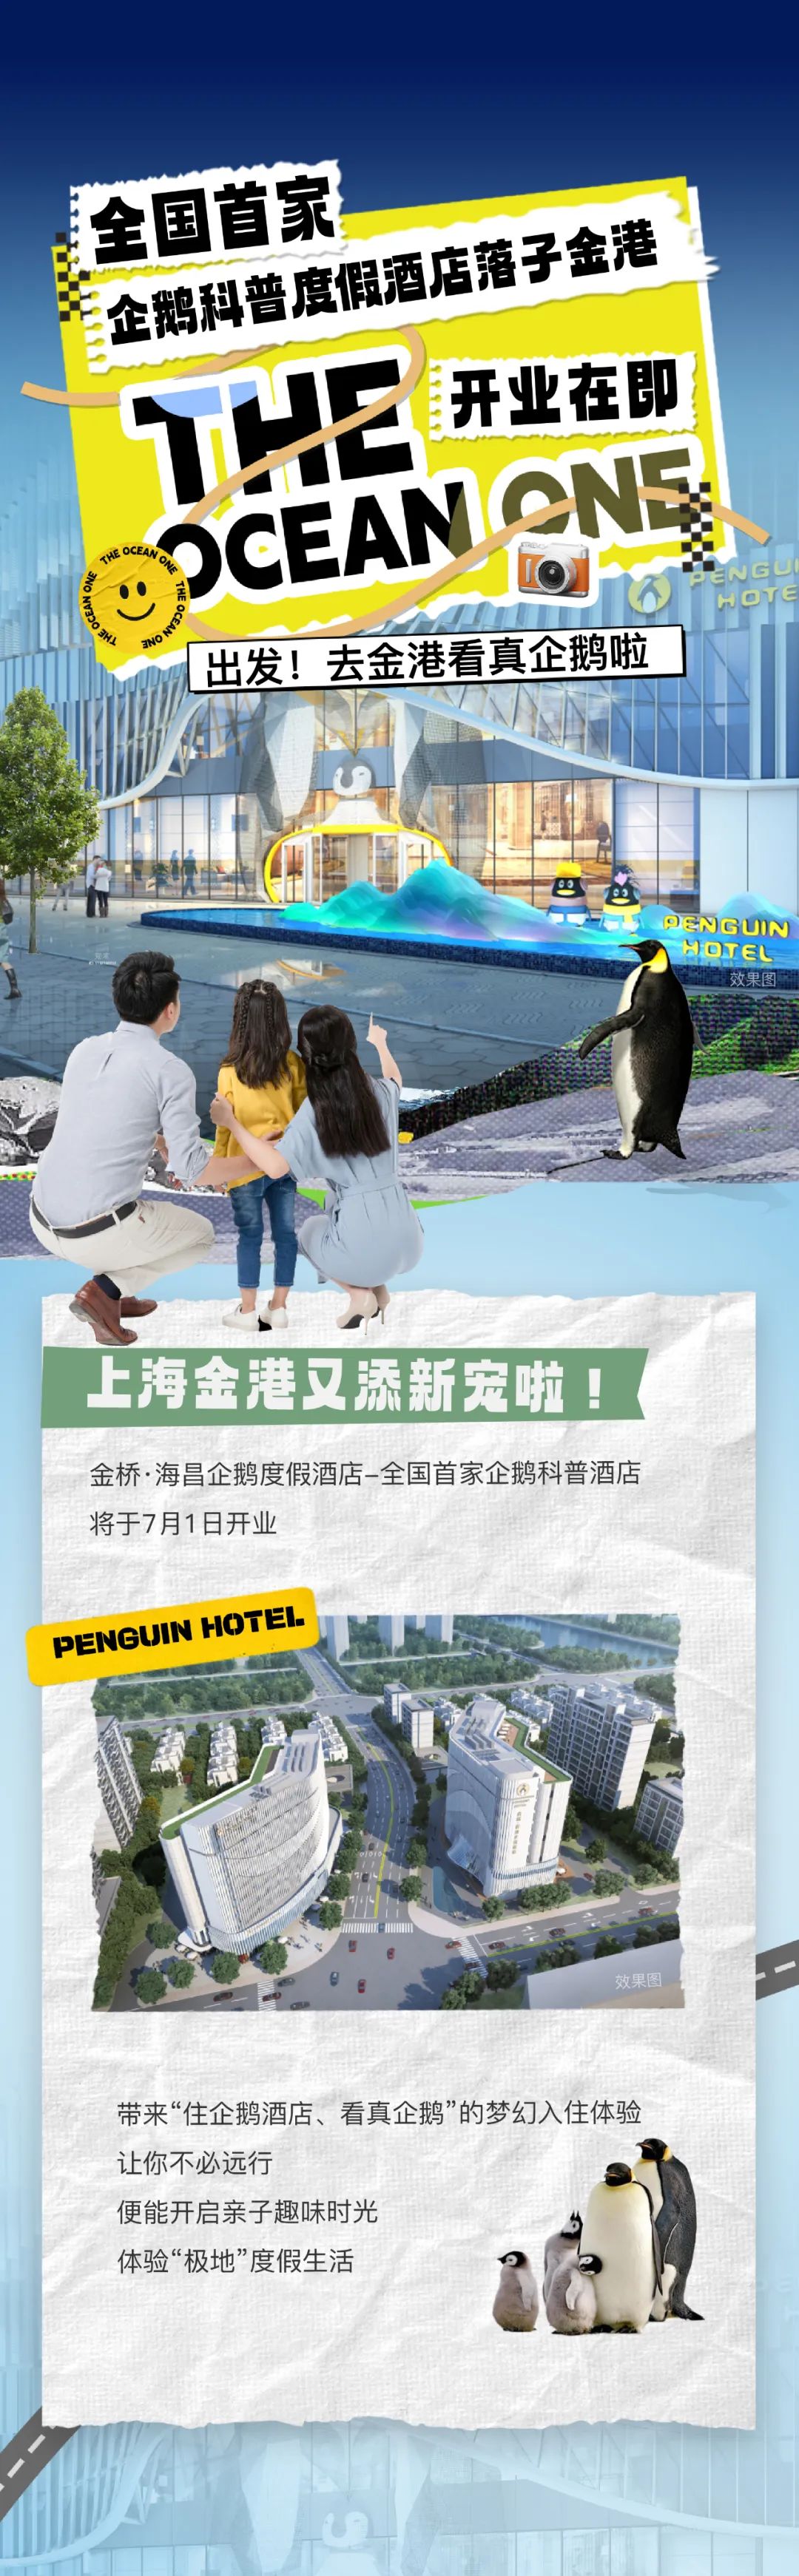 全国首家企鹅科普度假酒店开业在即